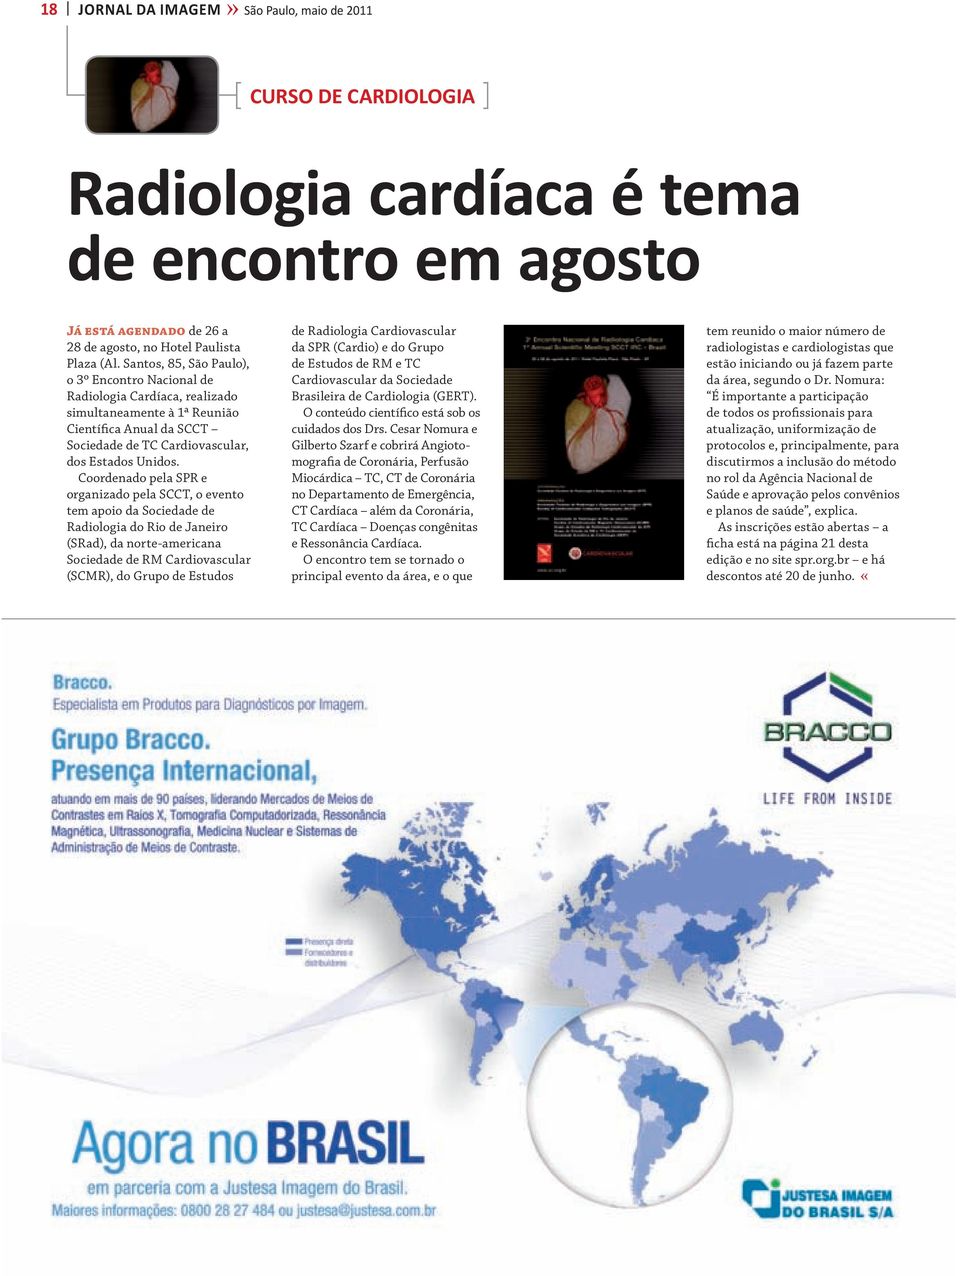 Coordenado pela SPR e organizado pela SCCT, o evento tem apoio da Sociedade de Radiologia do Rio de Janeiro (SRad), da norte-americana Sociedade de RM Cardiovascular (SCMR), do Grupo de Estudos de